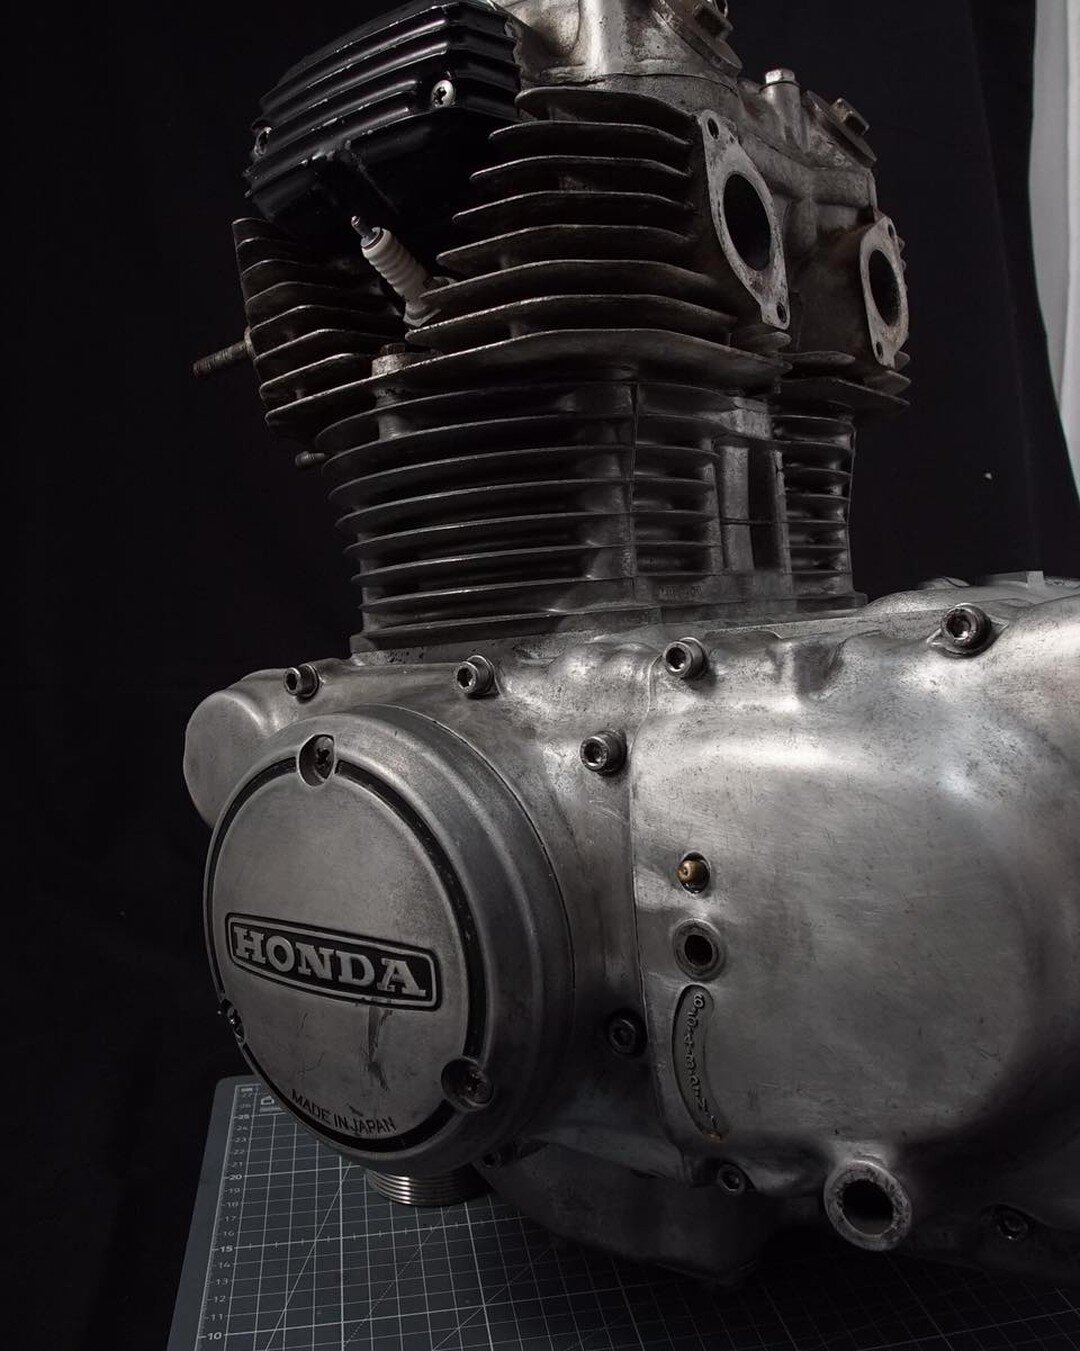 L'histoire du moteur Honda CB360 se poursuit.  Maintenant, les couvercles du moteur sont termin&eacute;s.

#honda #cb360 #twincylinder  #japanesemotorcycle  #classichonda  #vintage #classic #restauration #engine #motor #vaporblasting #vapourblasting 